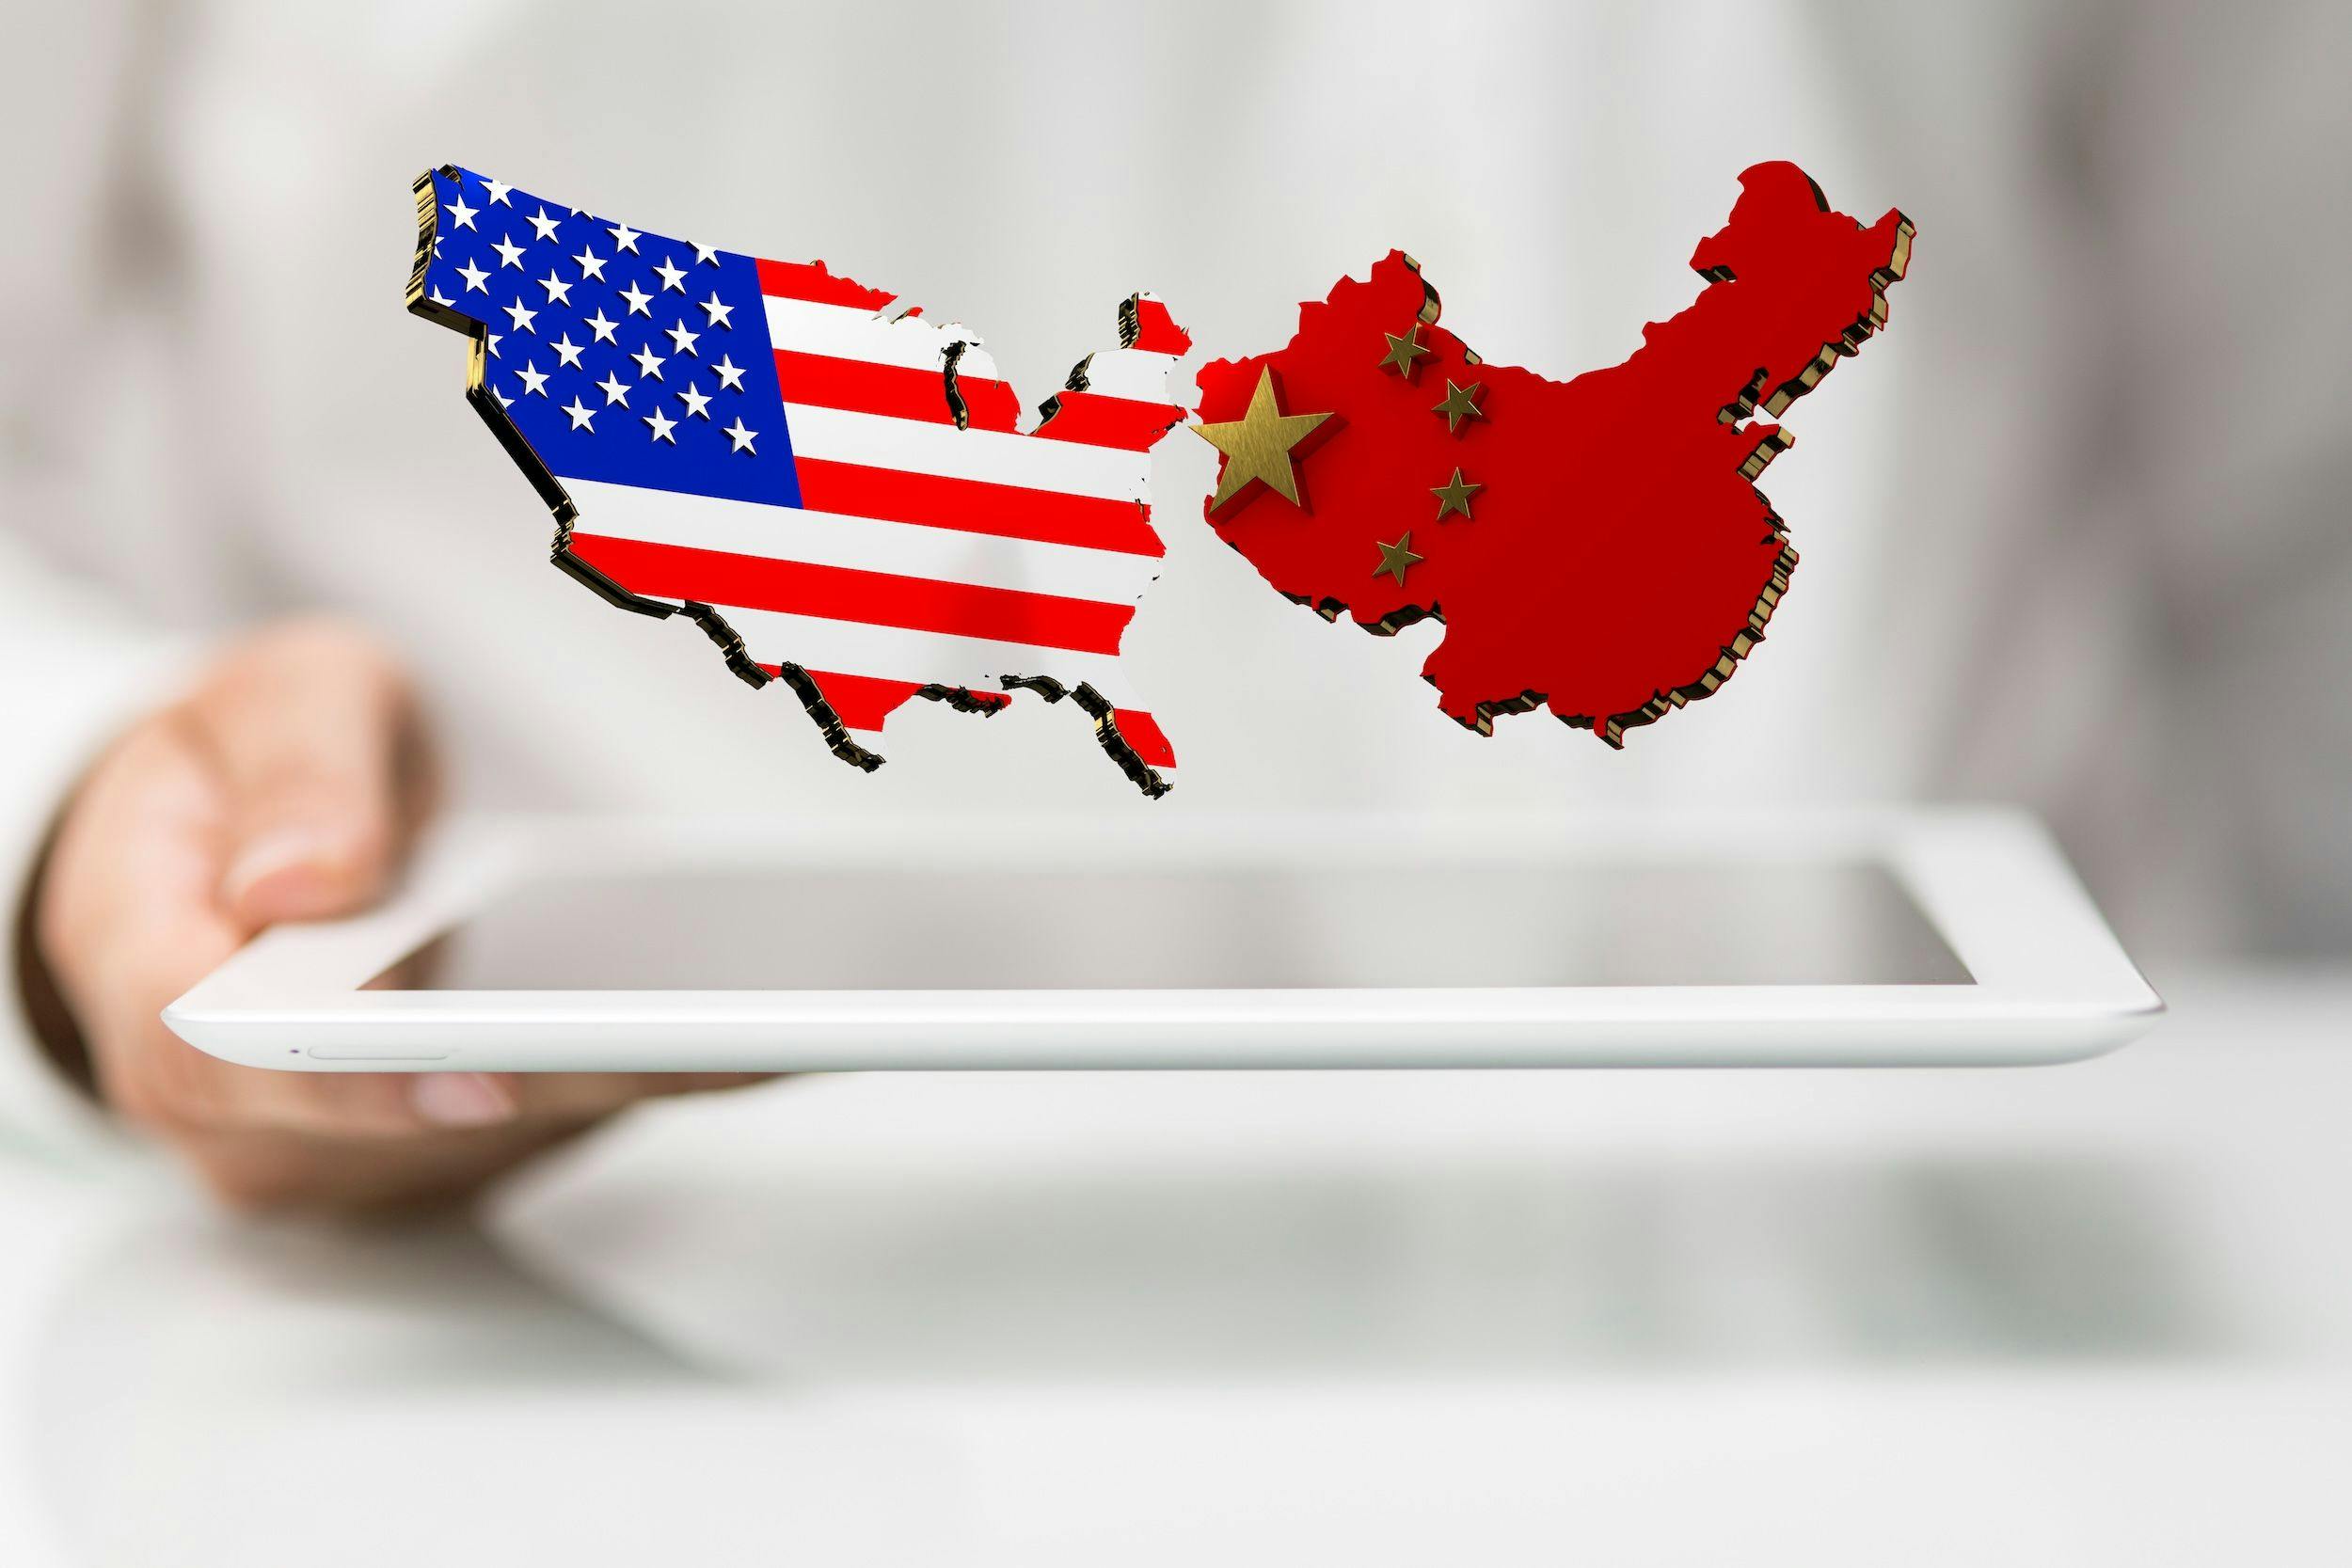 China USA, Kooperation, Interaktion, Chinapolitik, Wirtschaft, Politik: Eine Person präsentiert die virtuelle Projektion der Handelspartnerschaft zwischen den USA und China